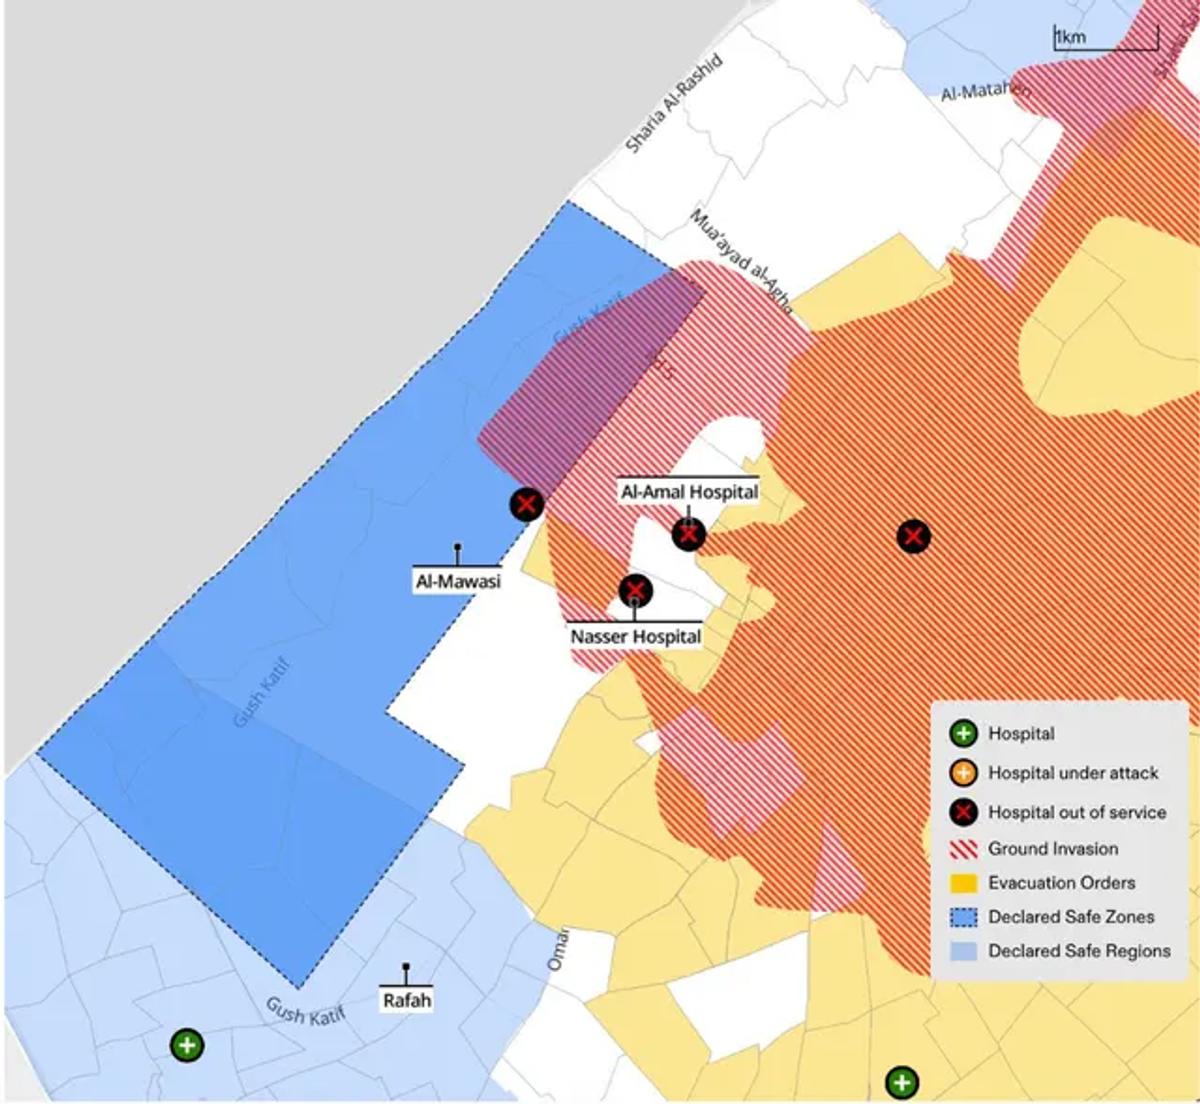 Forensic Architecture tarafından oluşturulan ve İsrail ordusunun 22 Ocak'a kadar verdiği tahliye emirlerini gösteren Gazze haritası (sarı).